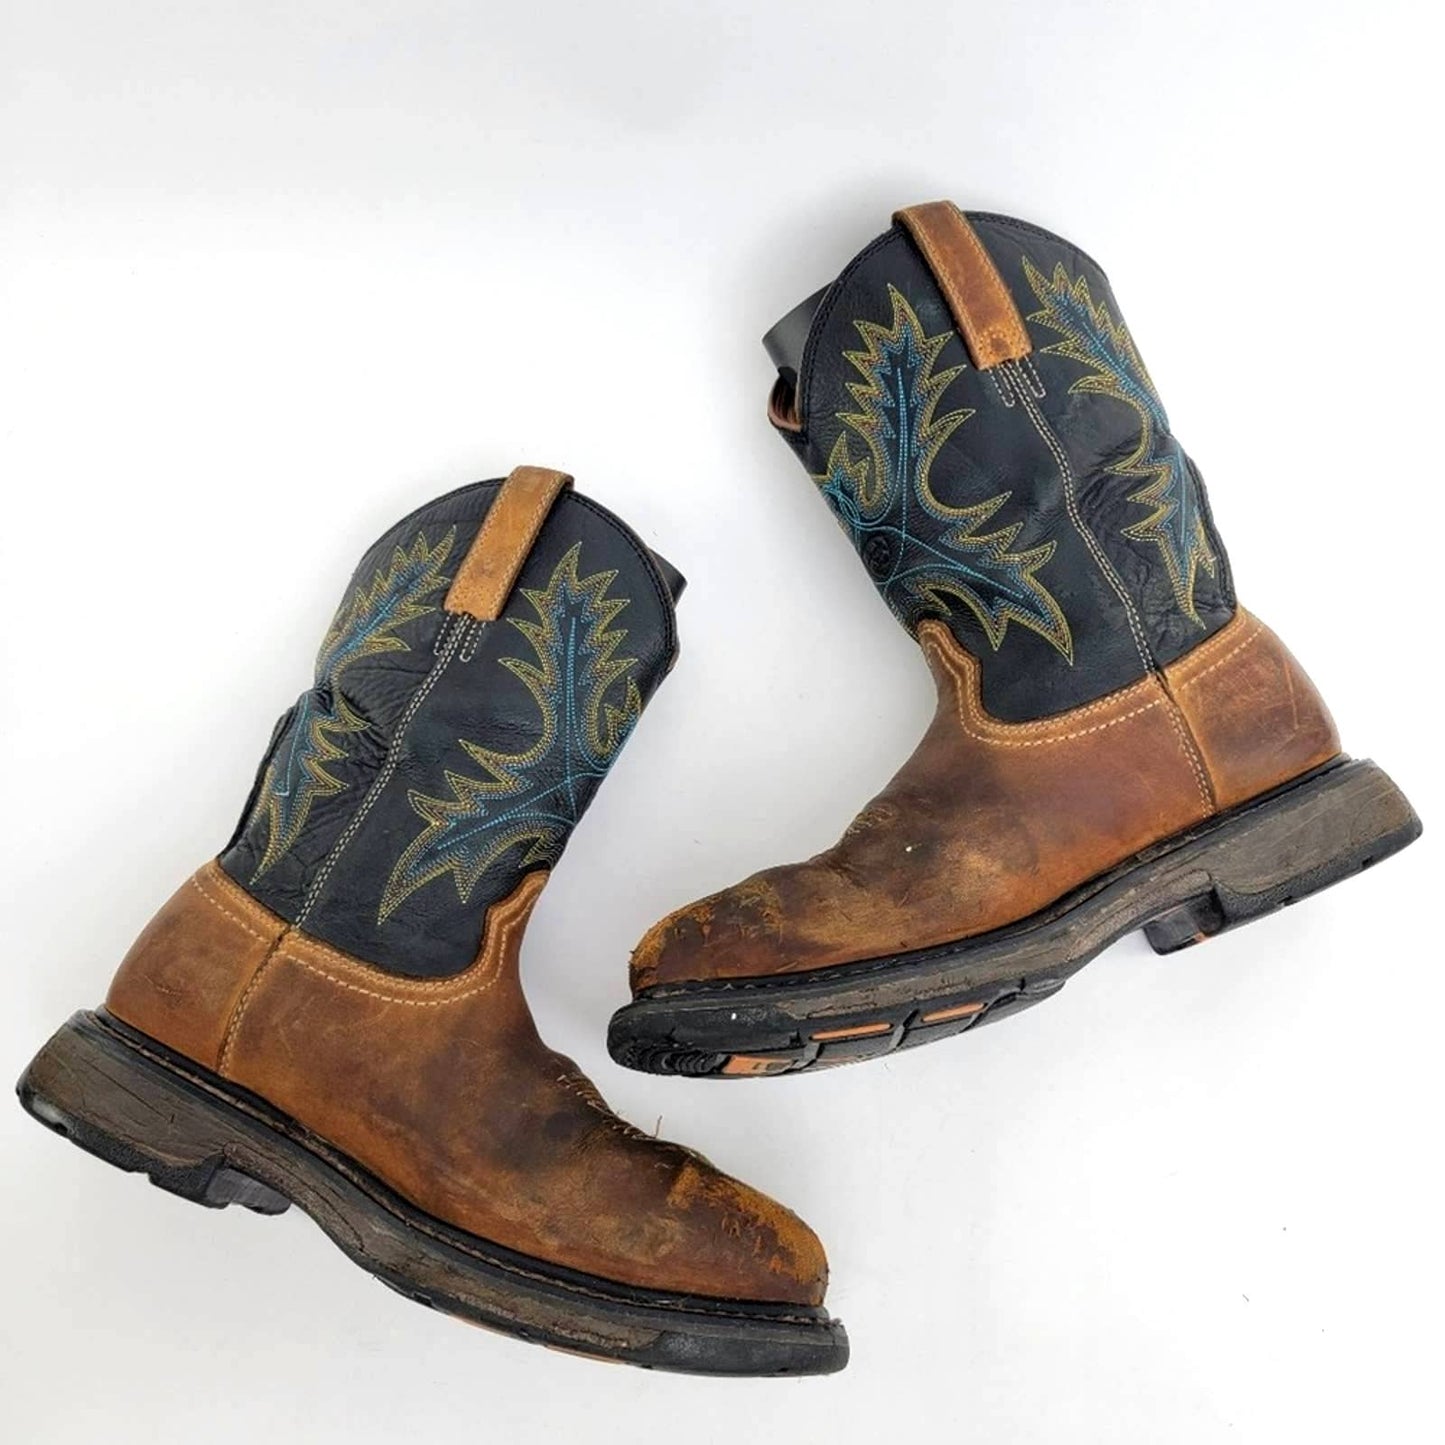 Ariat Workhog Waterproof Square Toe Steel Toe Work Boots - 7.5 / 9